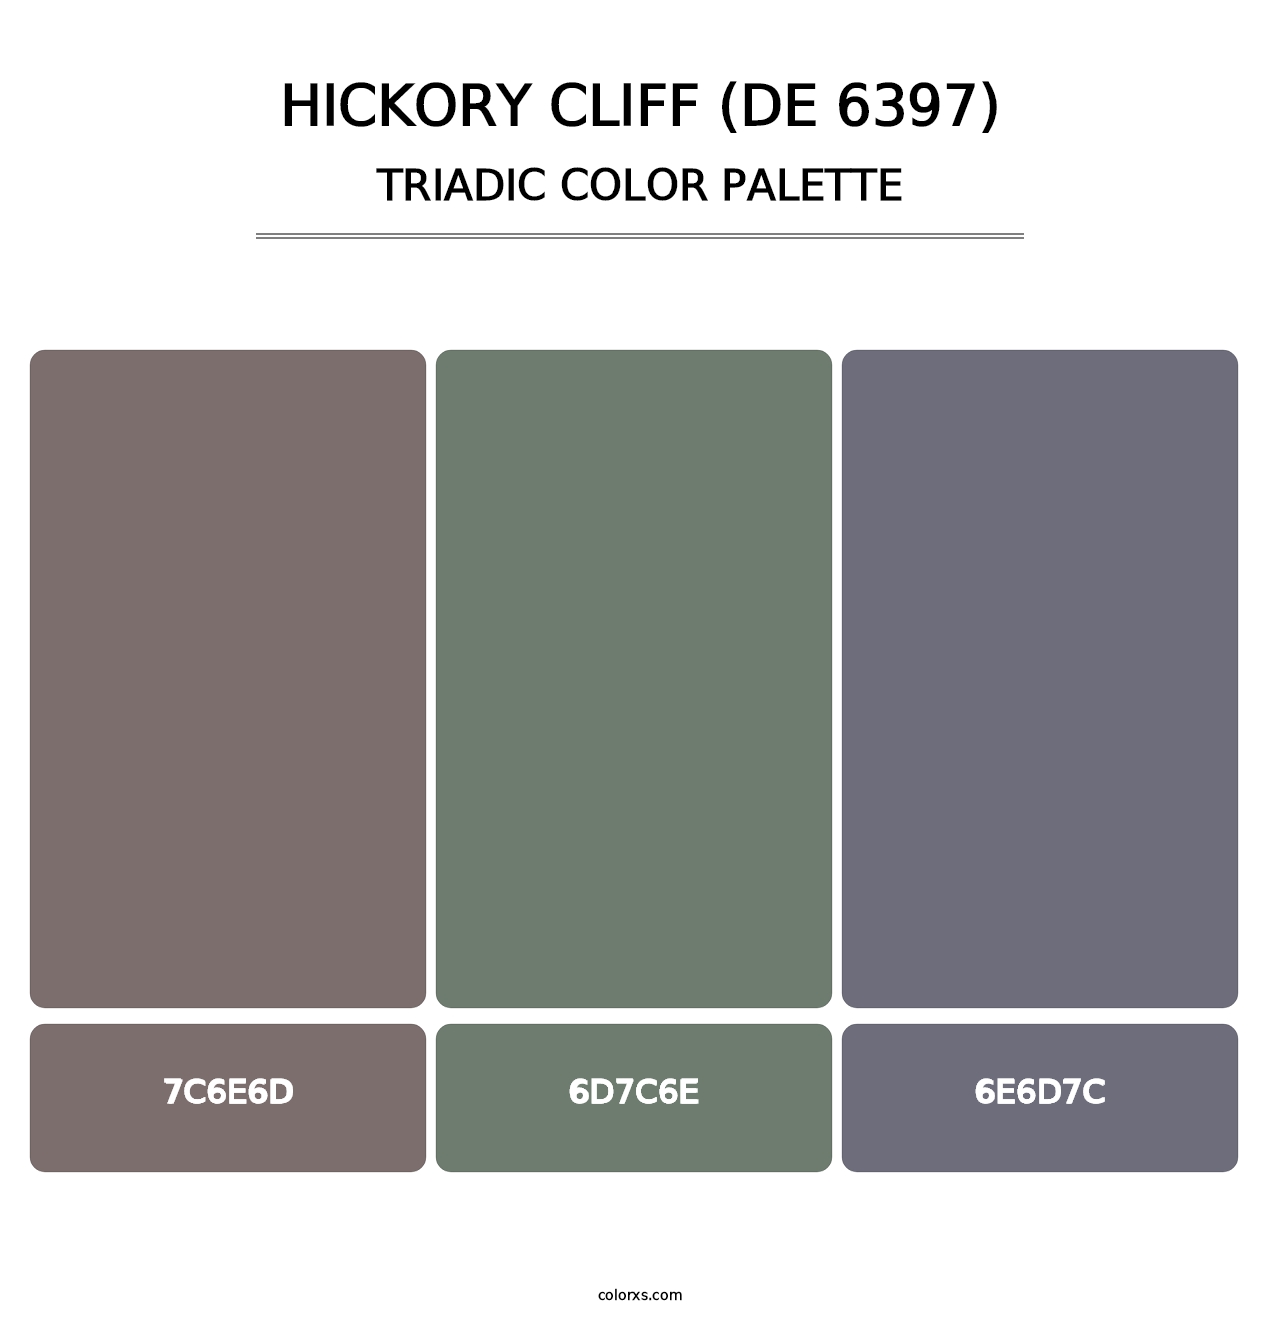 Hickory Cliff (DE 6397) - Triadic Color Palette